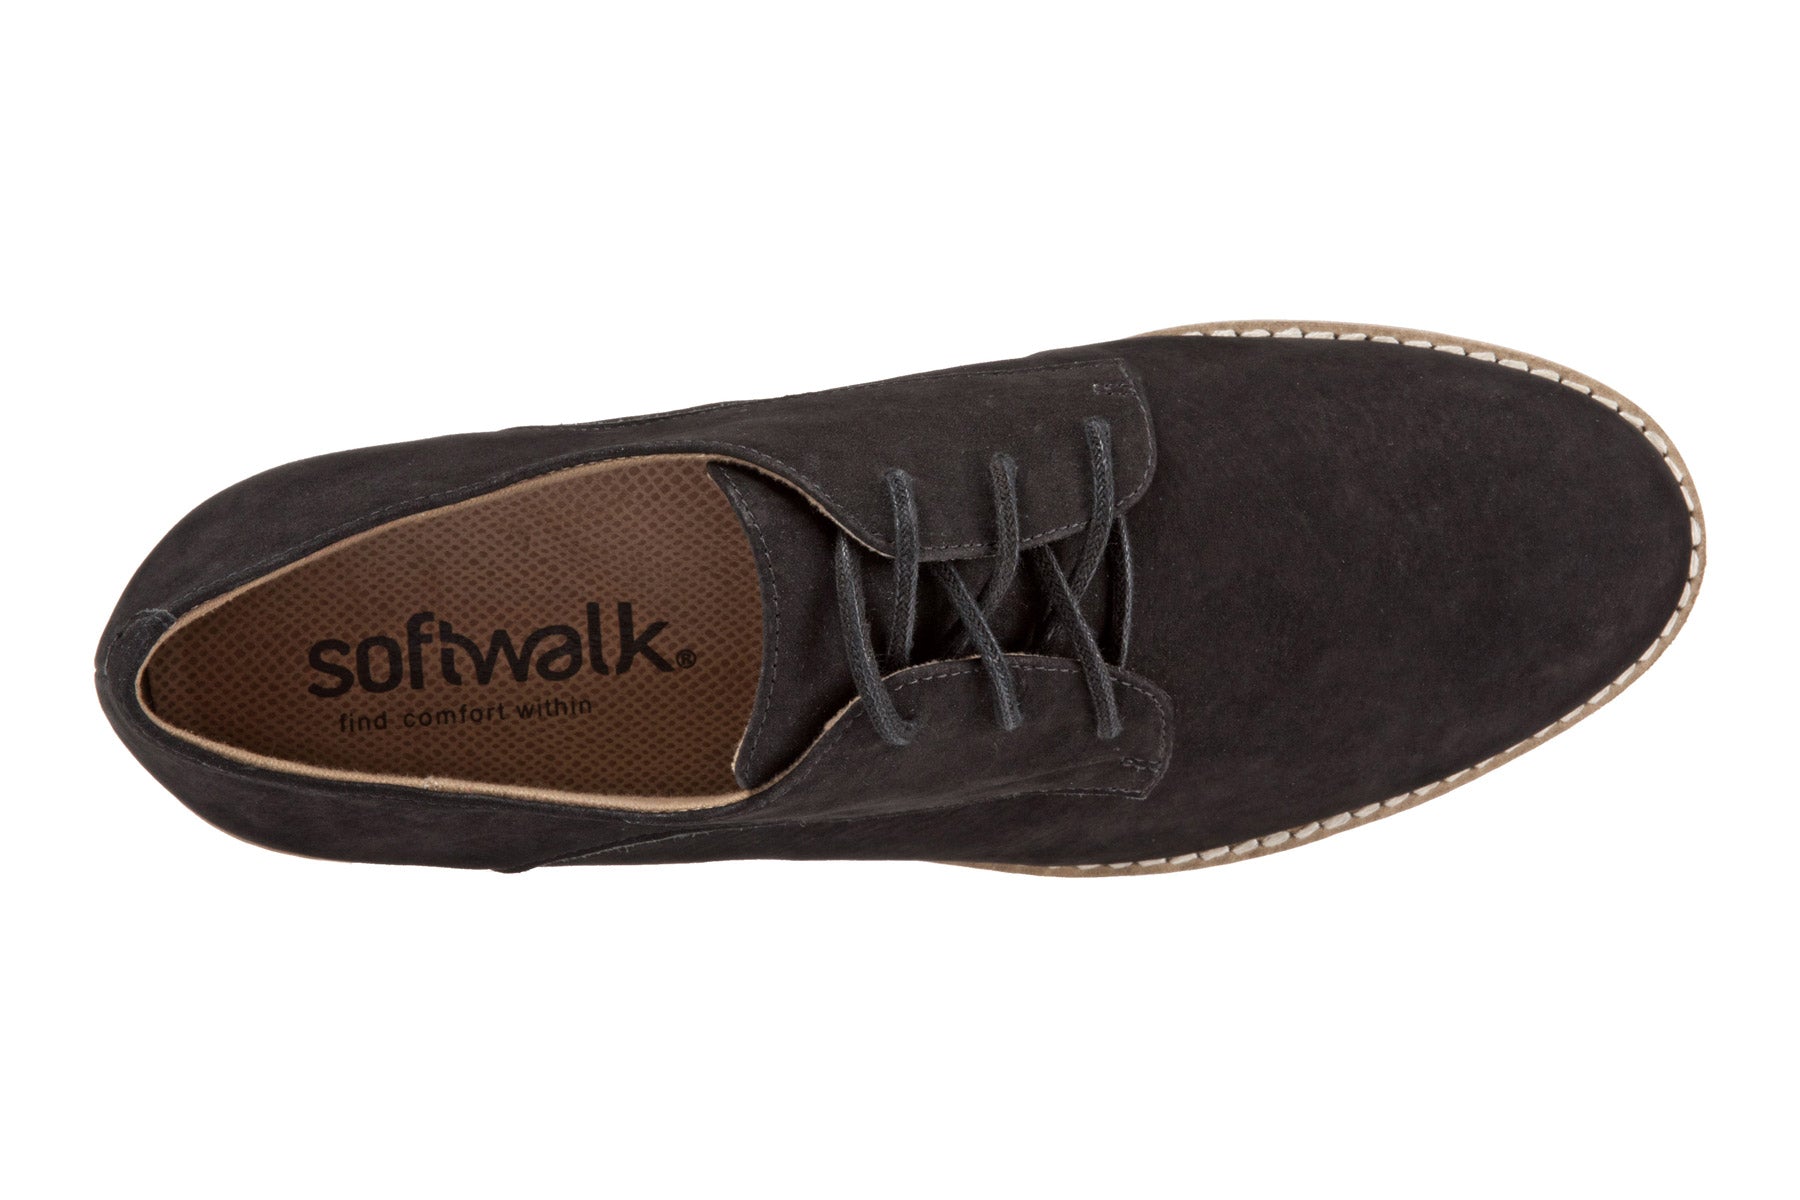 Softwalk Willis